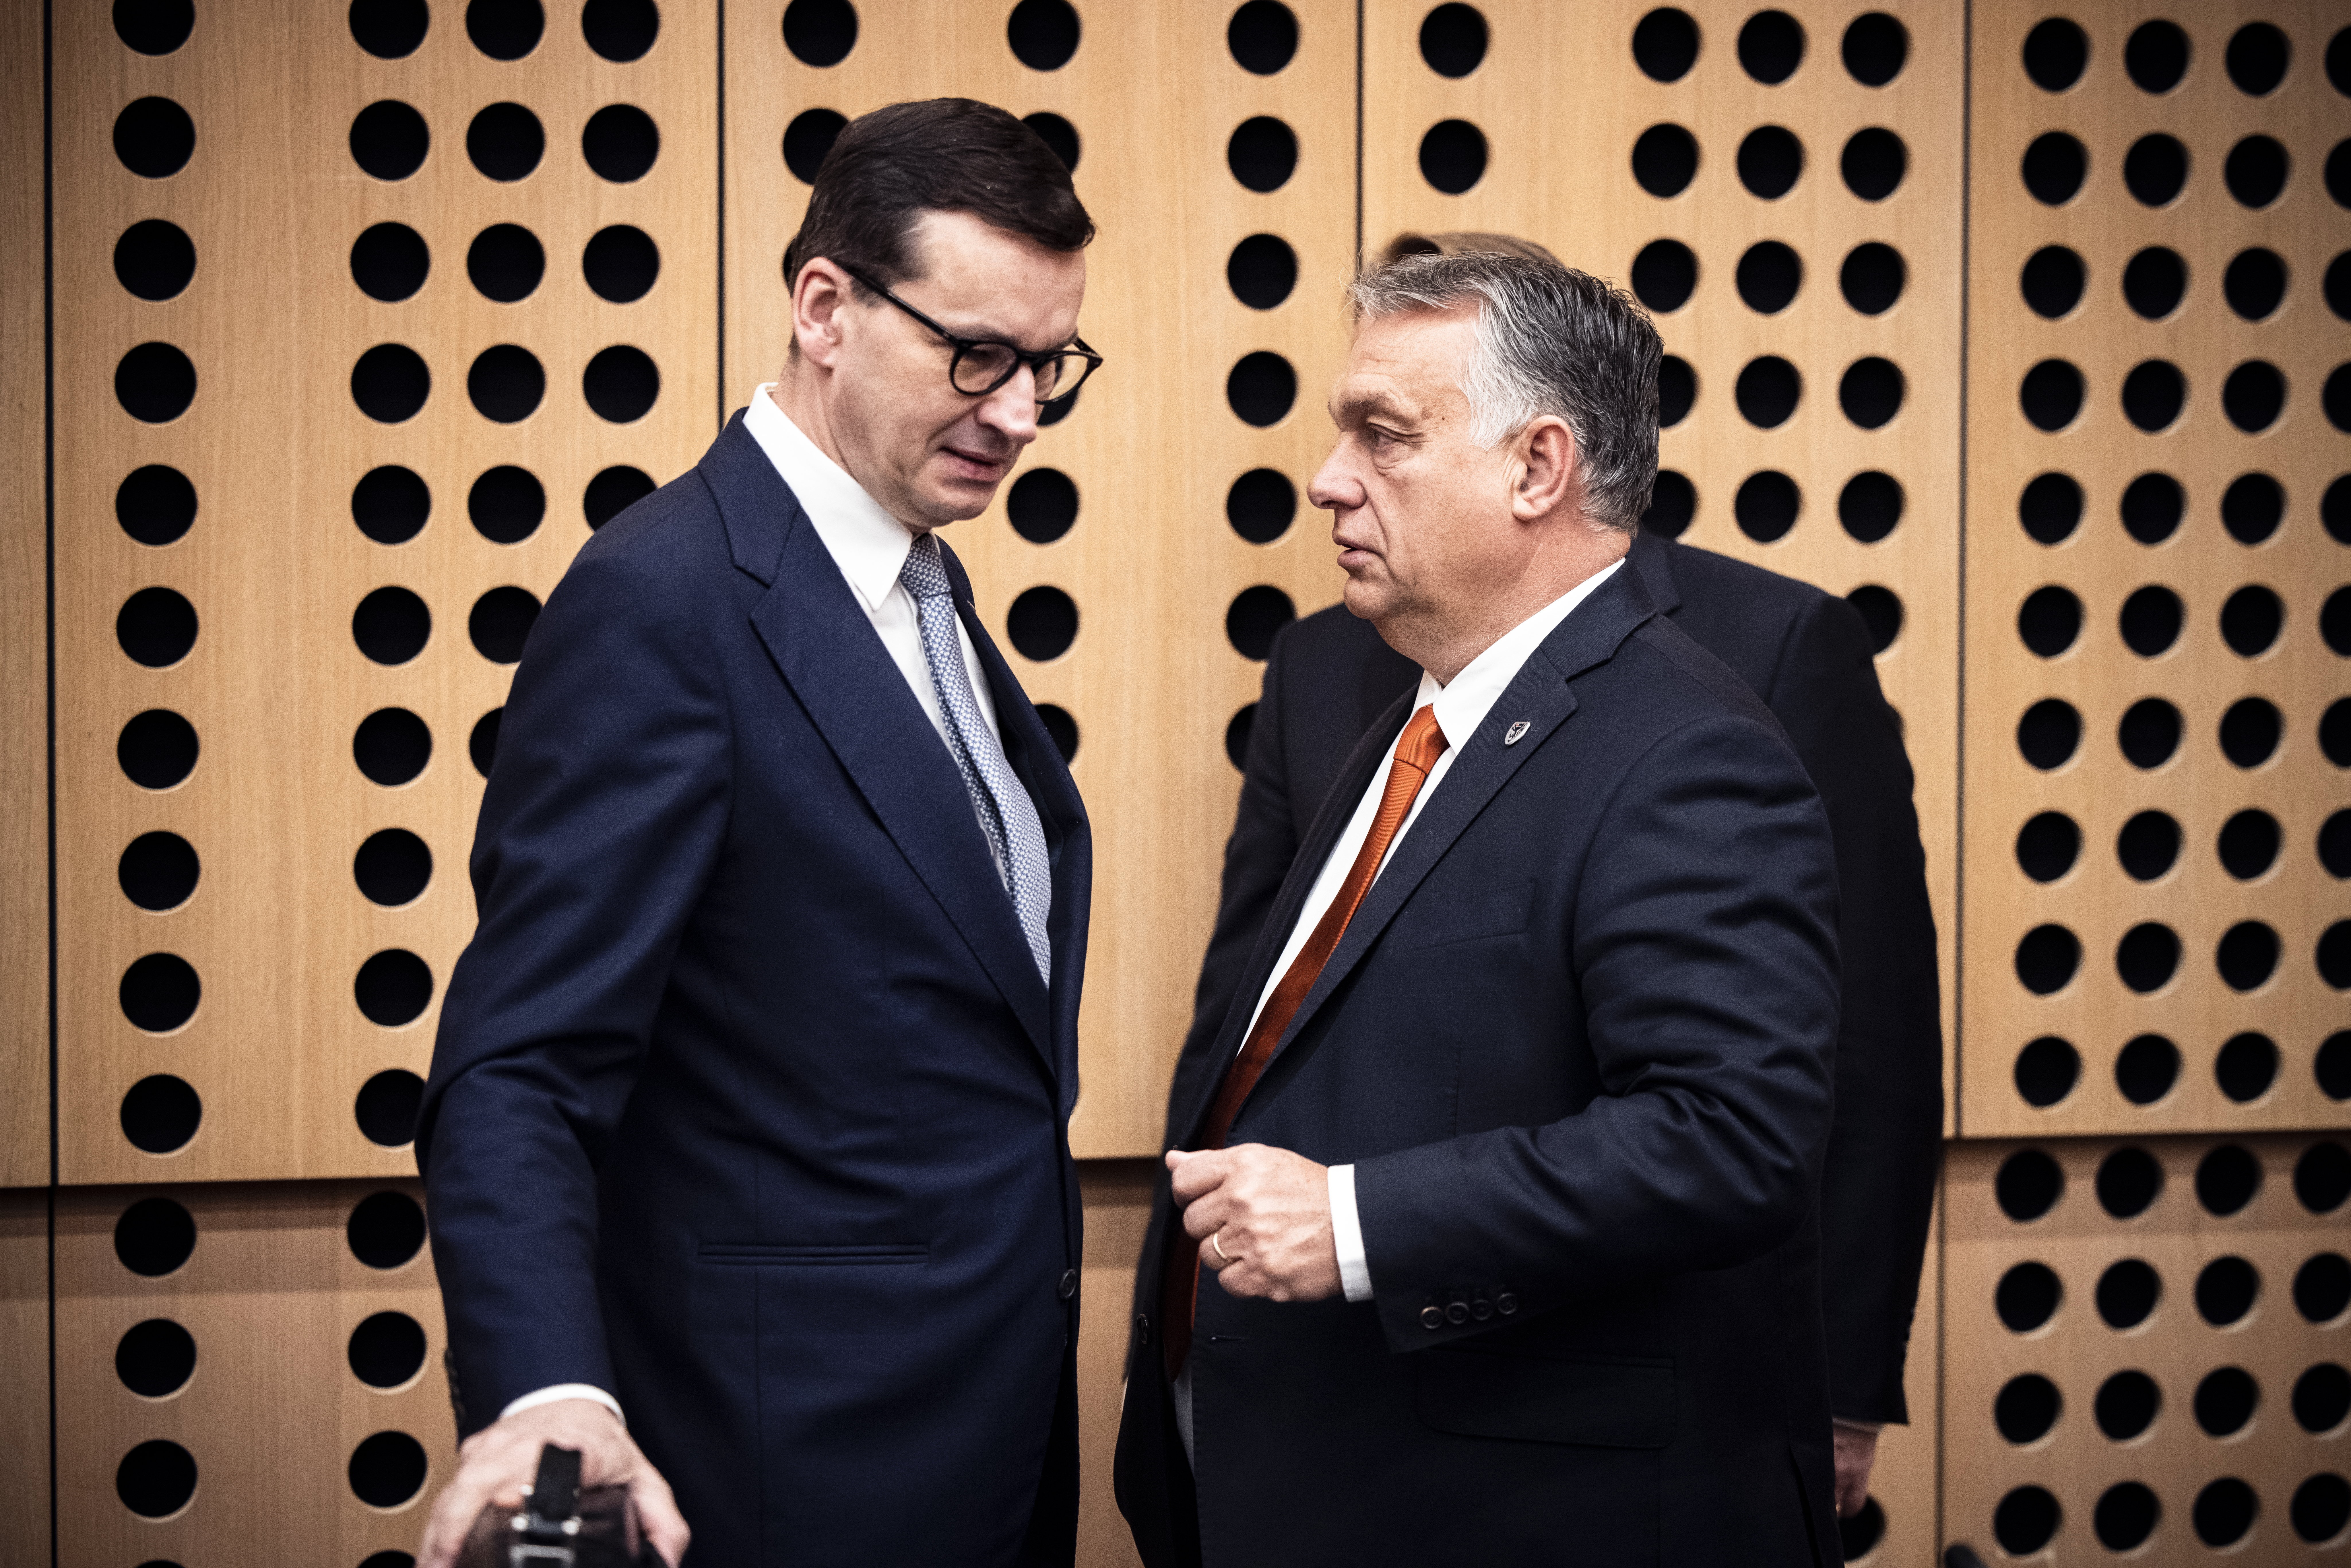 Mostanra a lengyel miniszterelnök is gratulált Orbán újraválasztásához